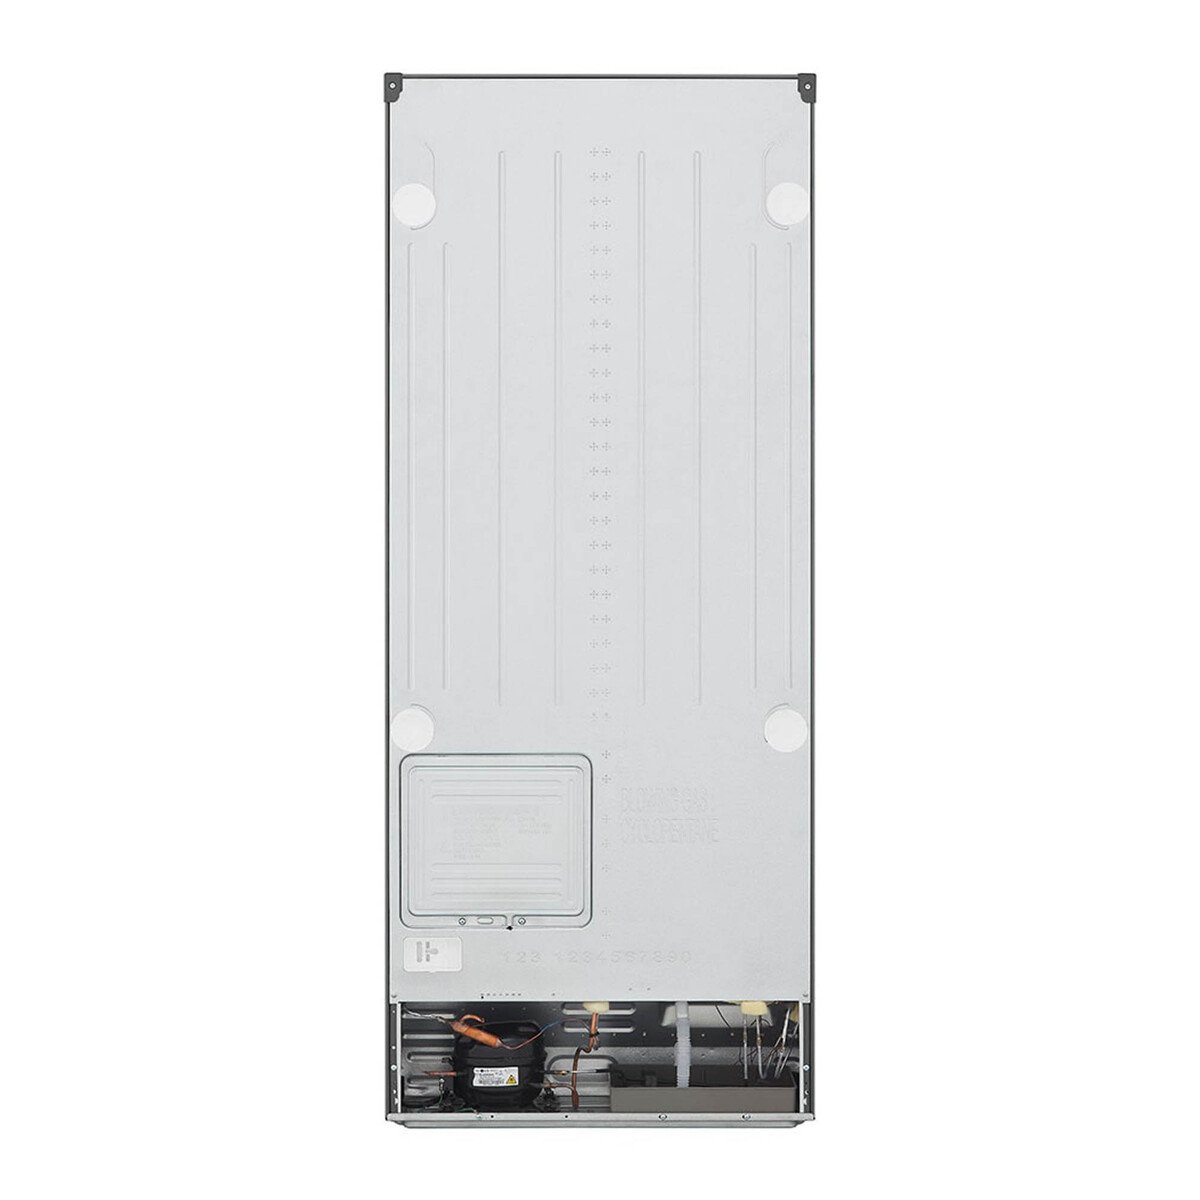 ال جي ثلاجة بفريزر علوي 423 لتر ، خاصية تبريد الباب ،متعدد تدفق الهواء ، جرافيت داكن ، GN-B512PQGB